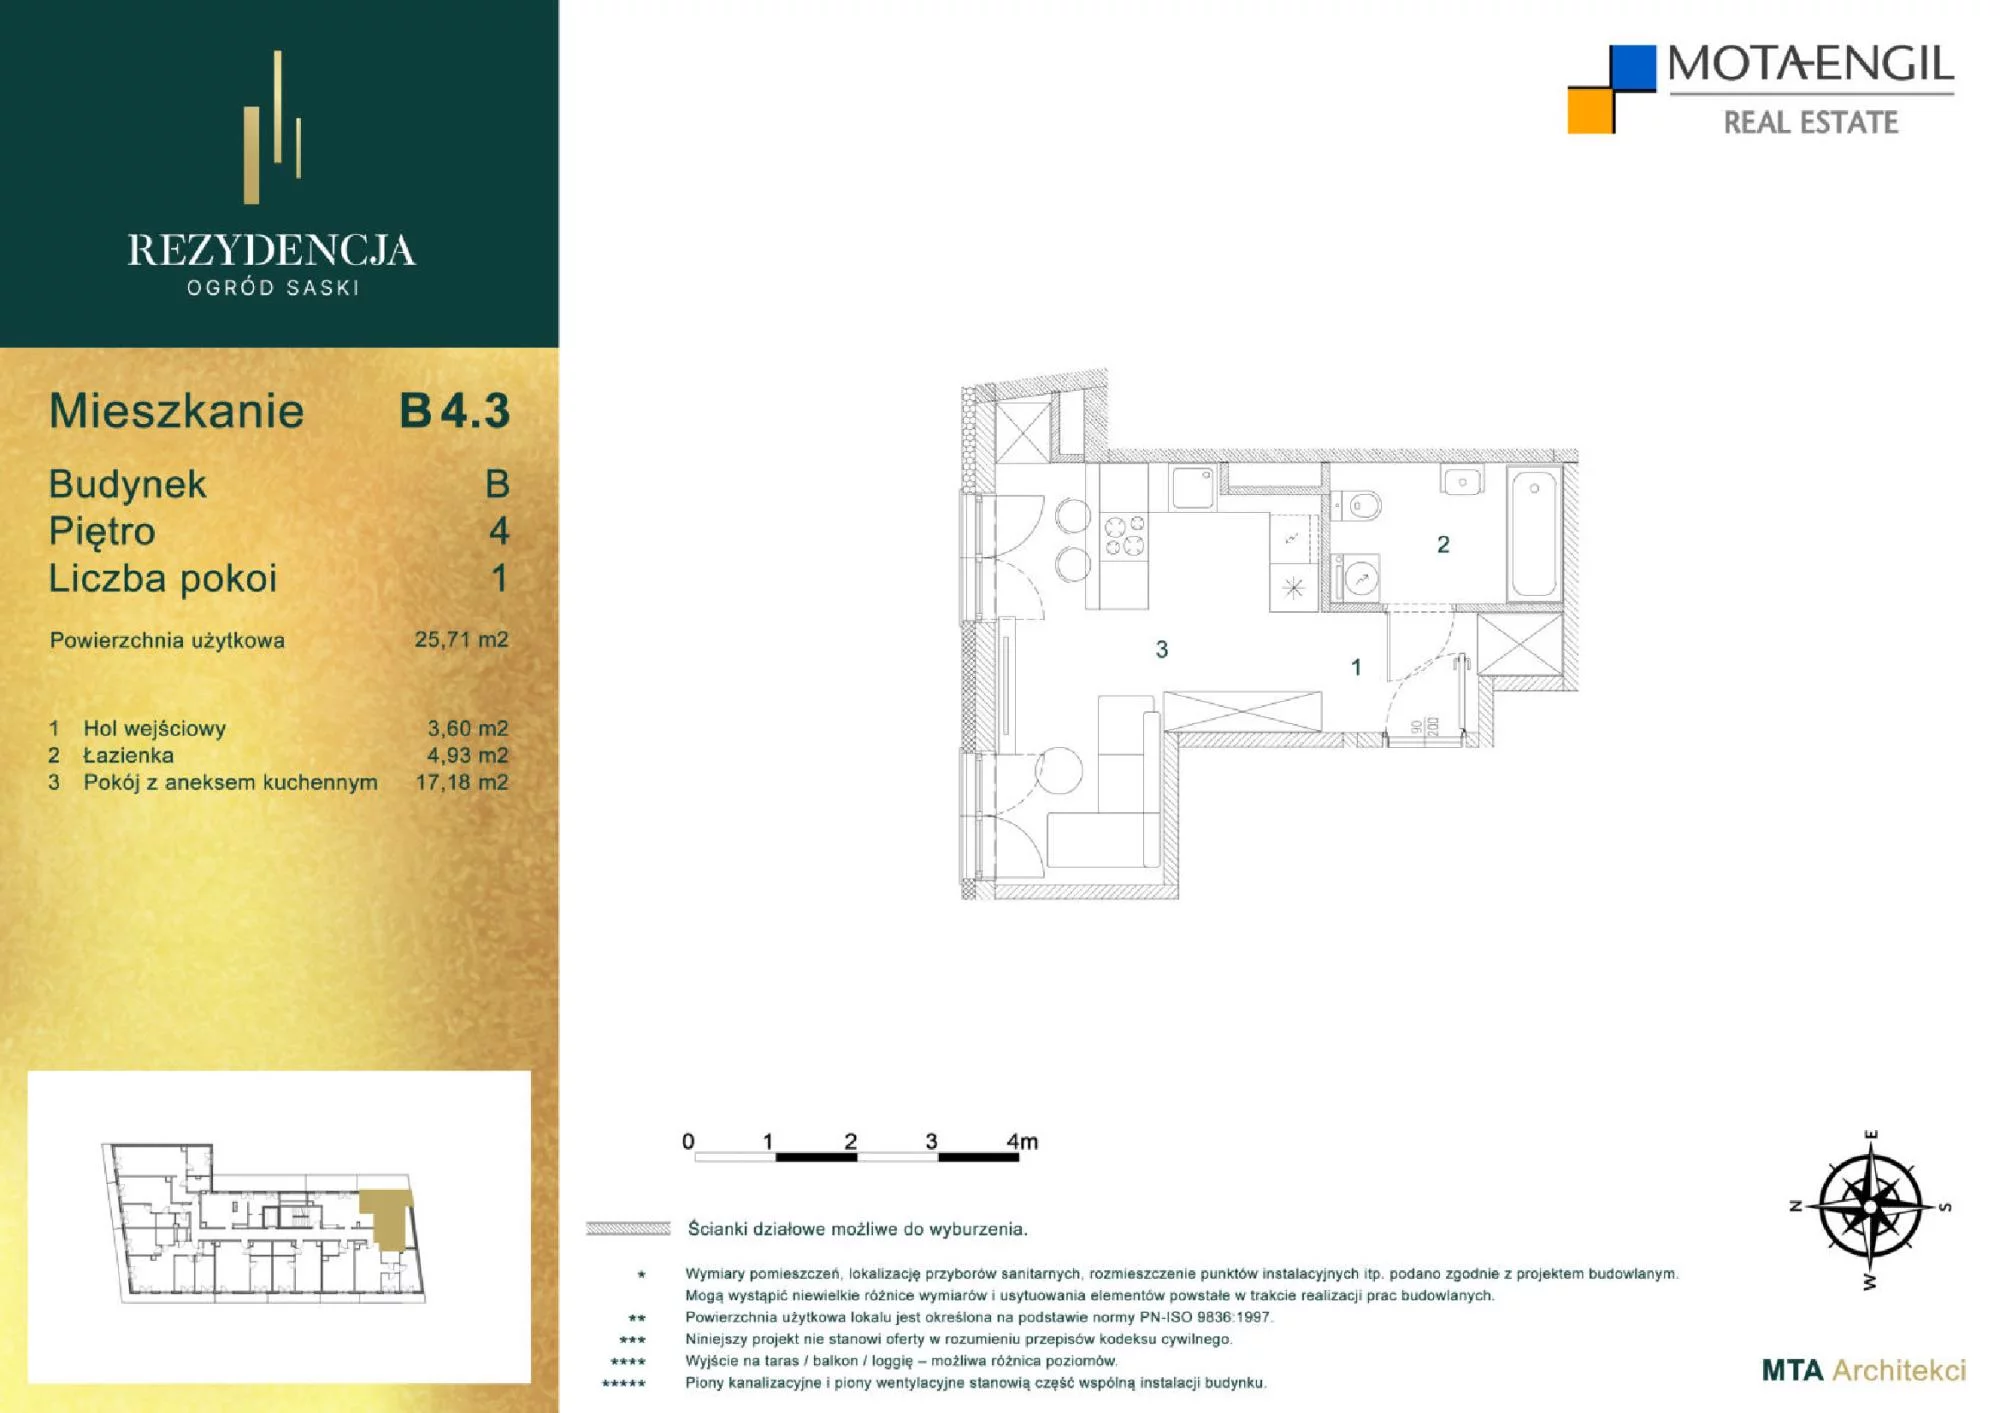 Mieszkanie 25,71 m², piętro 4, oferta nr B4.3, Rezydencja Ogród Saski, Lublin, Wieniawa, ul. Jasna 7, 7A